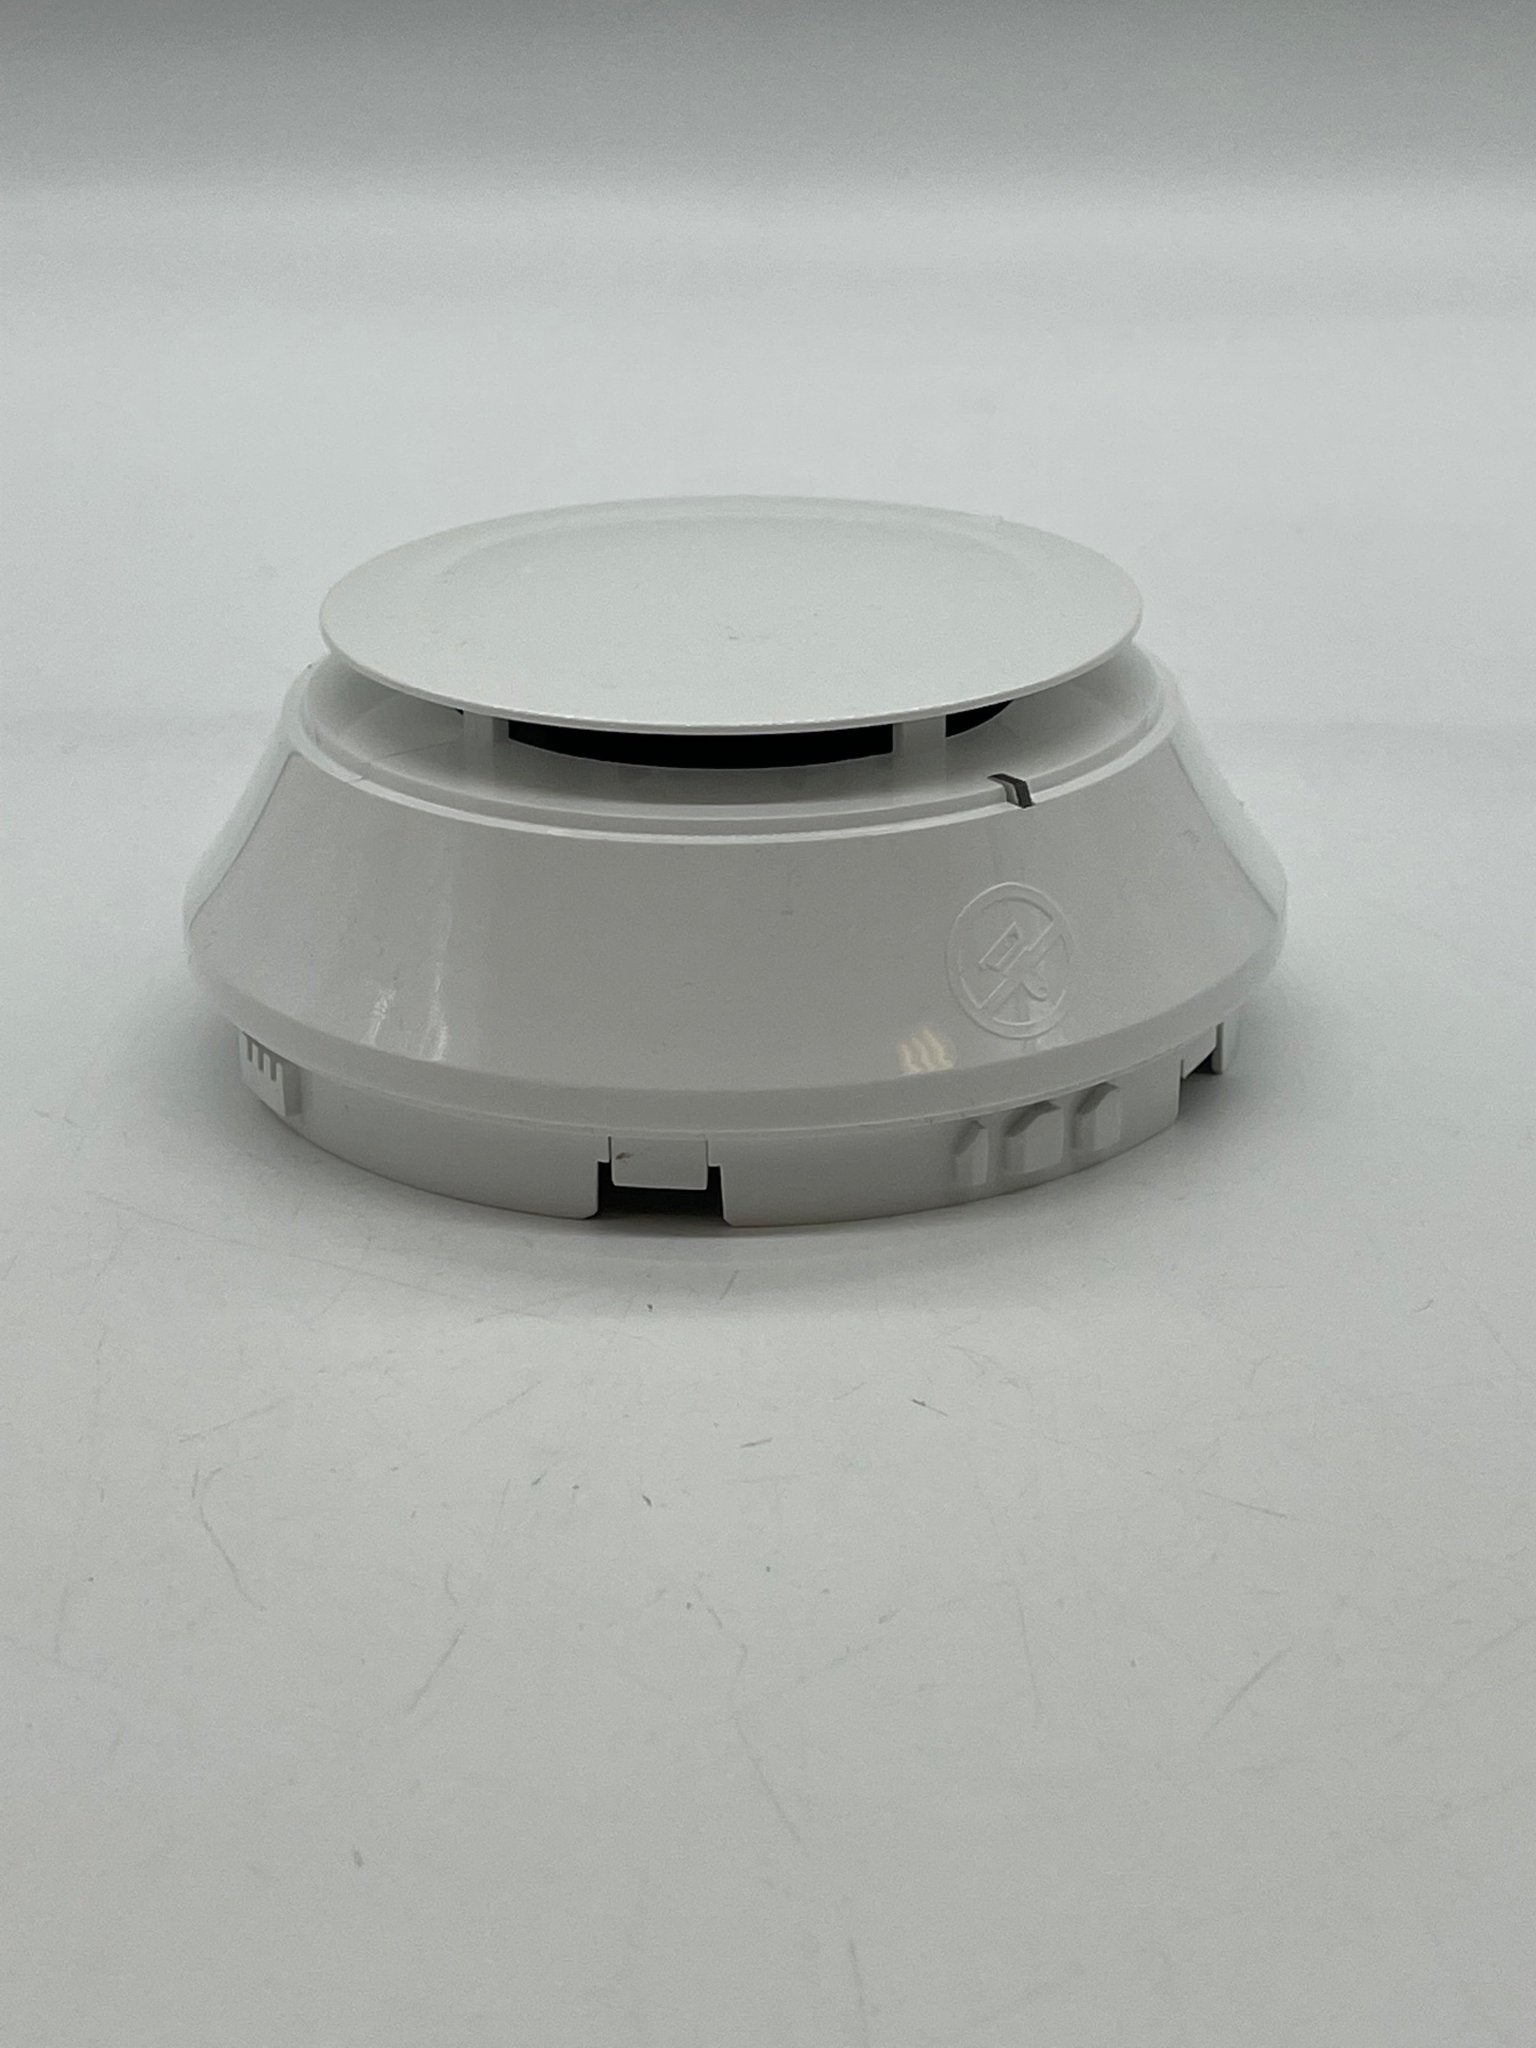 FSCO-951 - The Fire Alarm Supplier